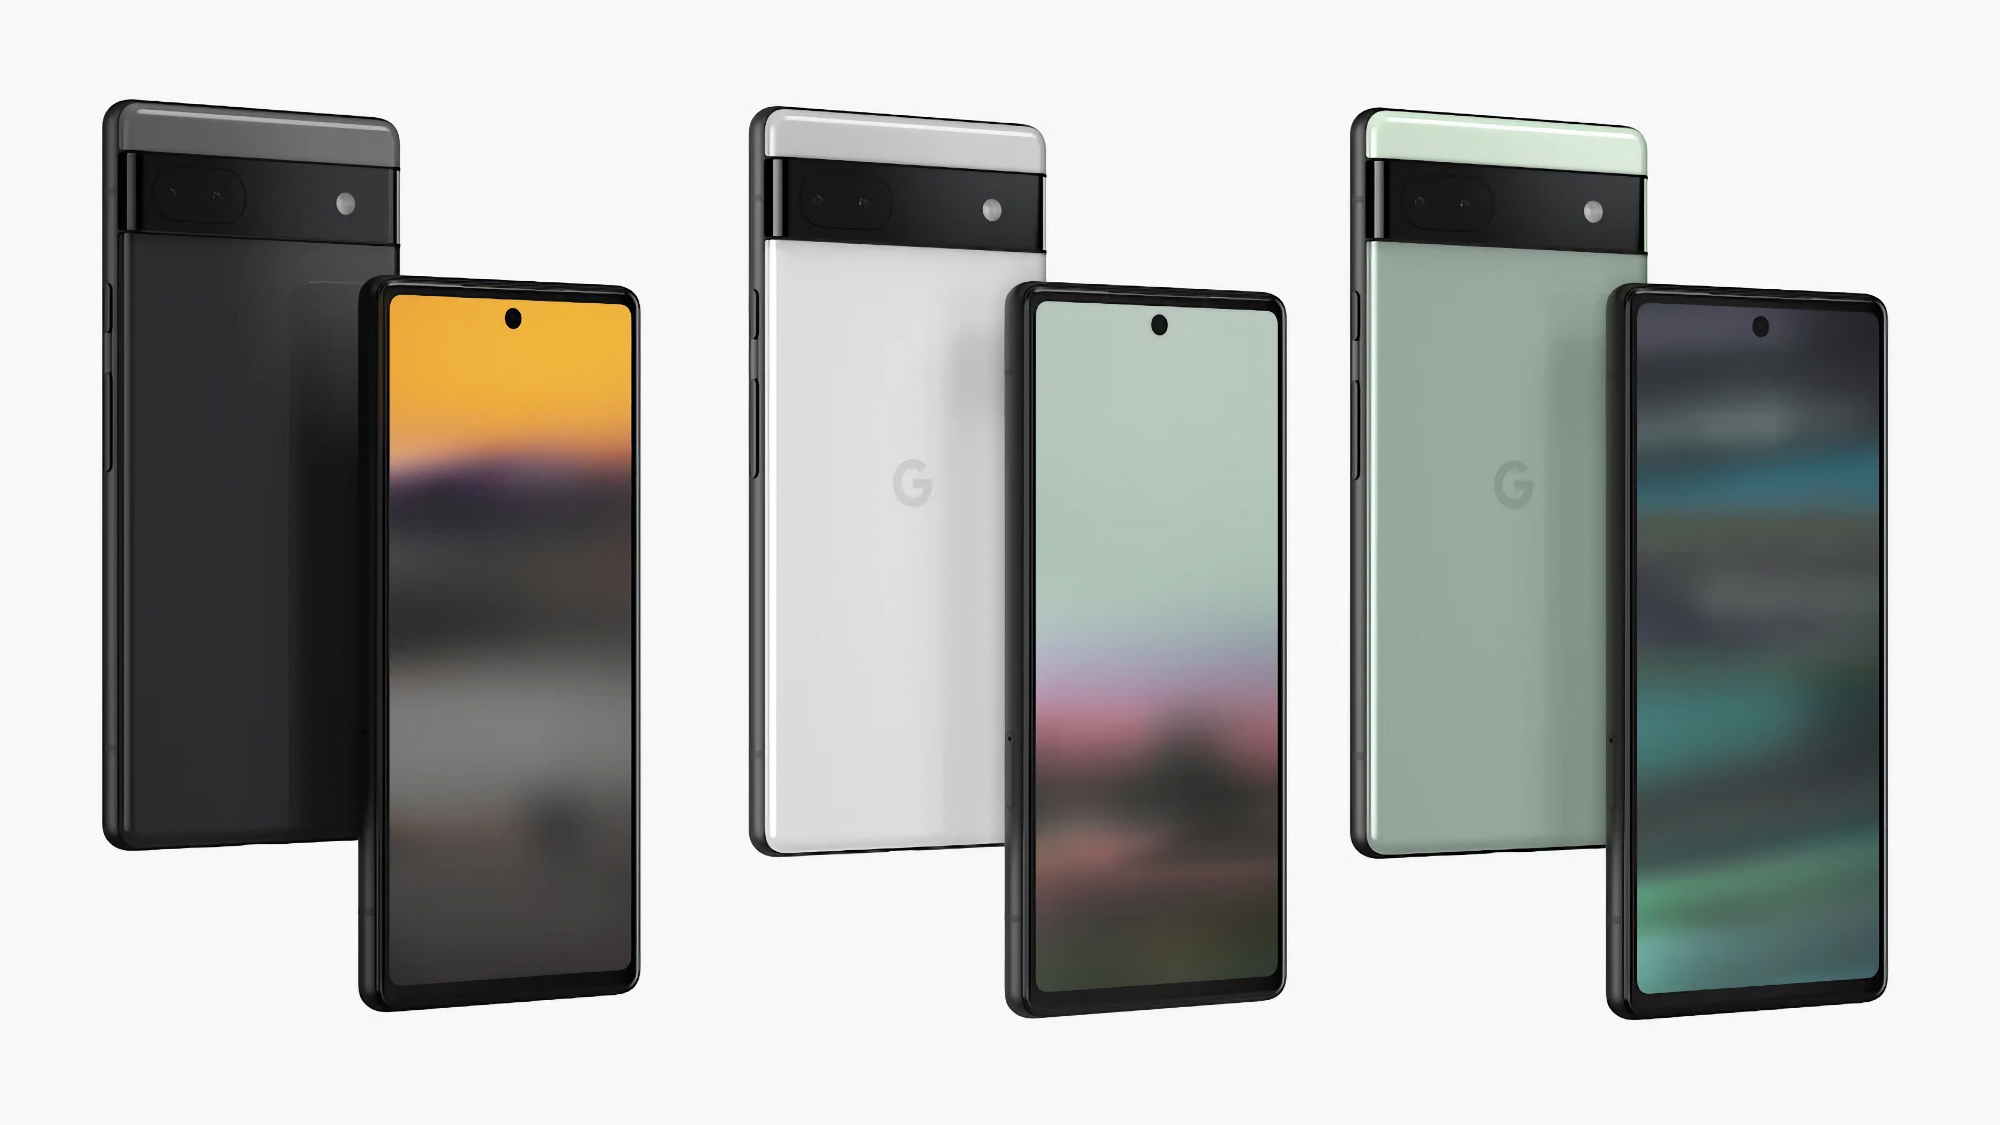 Google Pixel 6a è sceso di nuovo di prezzo: lo smartphone può essere acquistato su Amazon a 300 dollari (150 dollari di sconto)